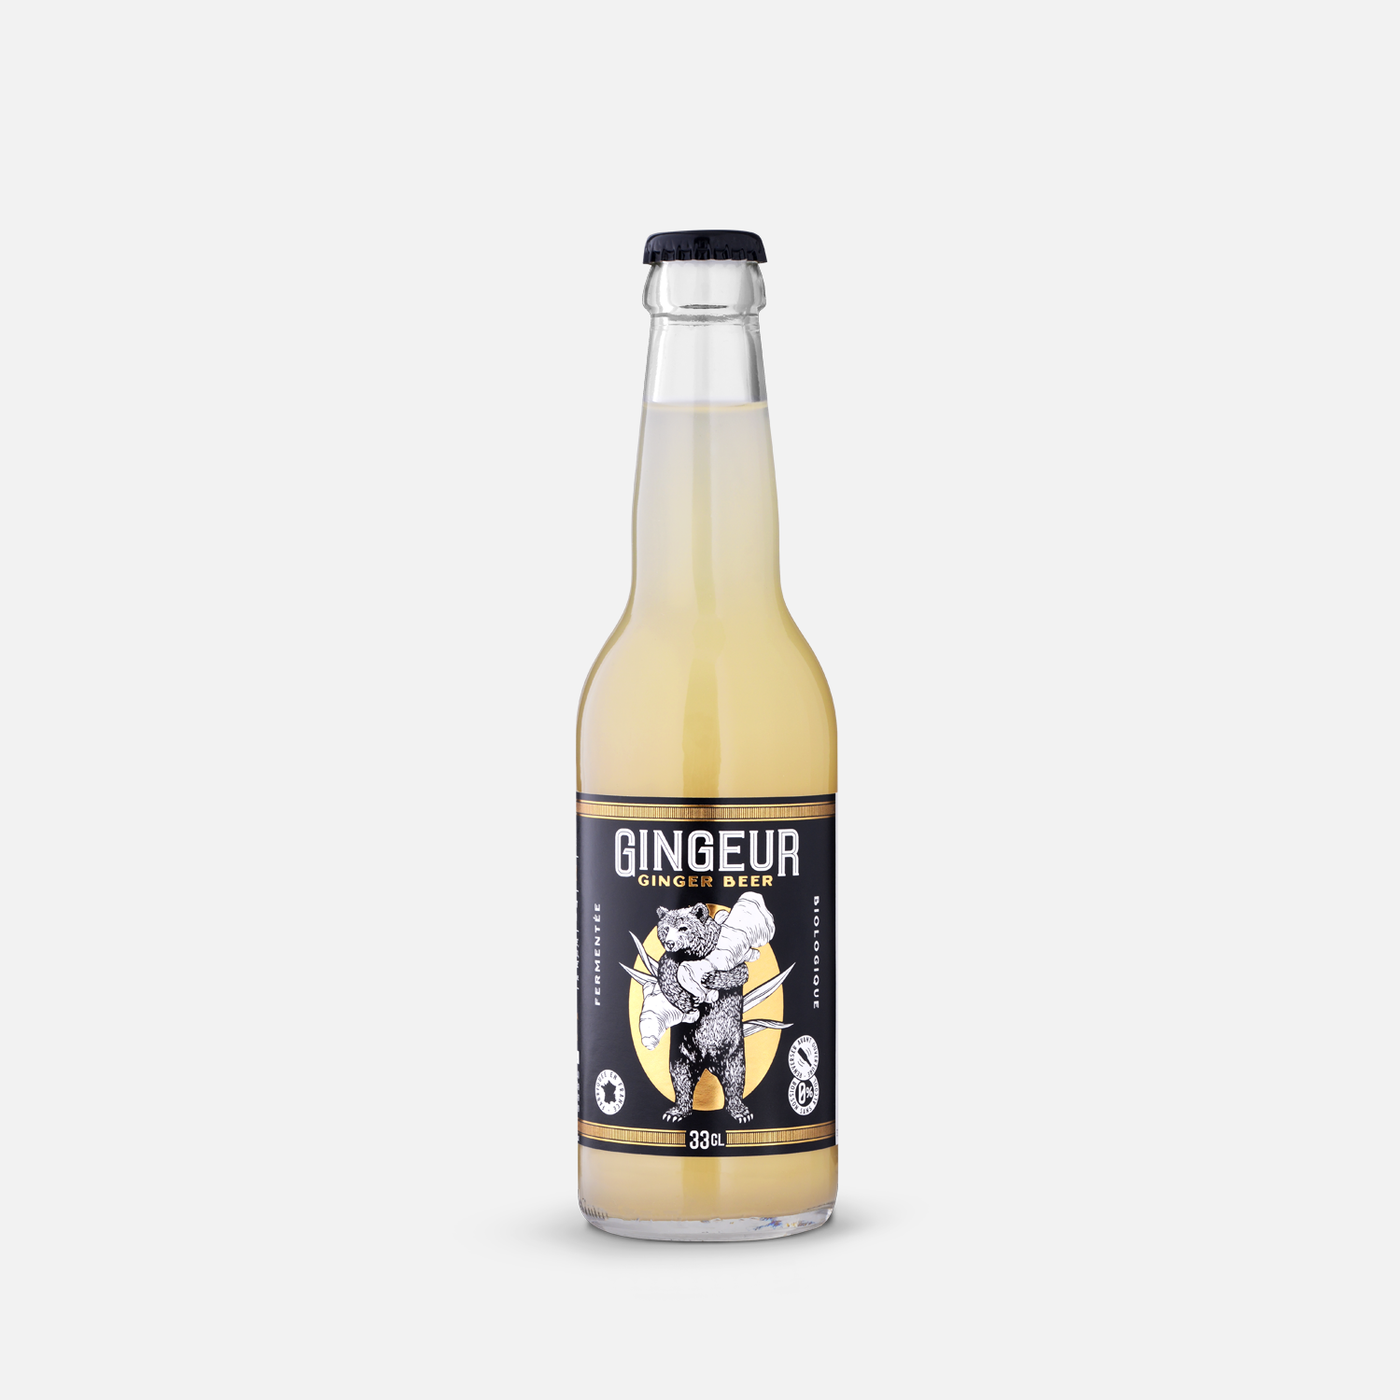 GINGEUR Ginger Beer Original - Biologique & Naturellement Fermenté - Bouteille 12x33cl - Retrait Pick-up Anglet uniquement